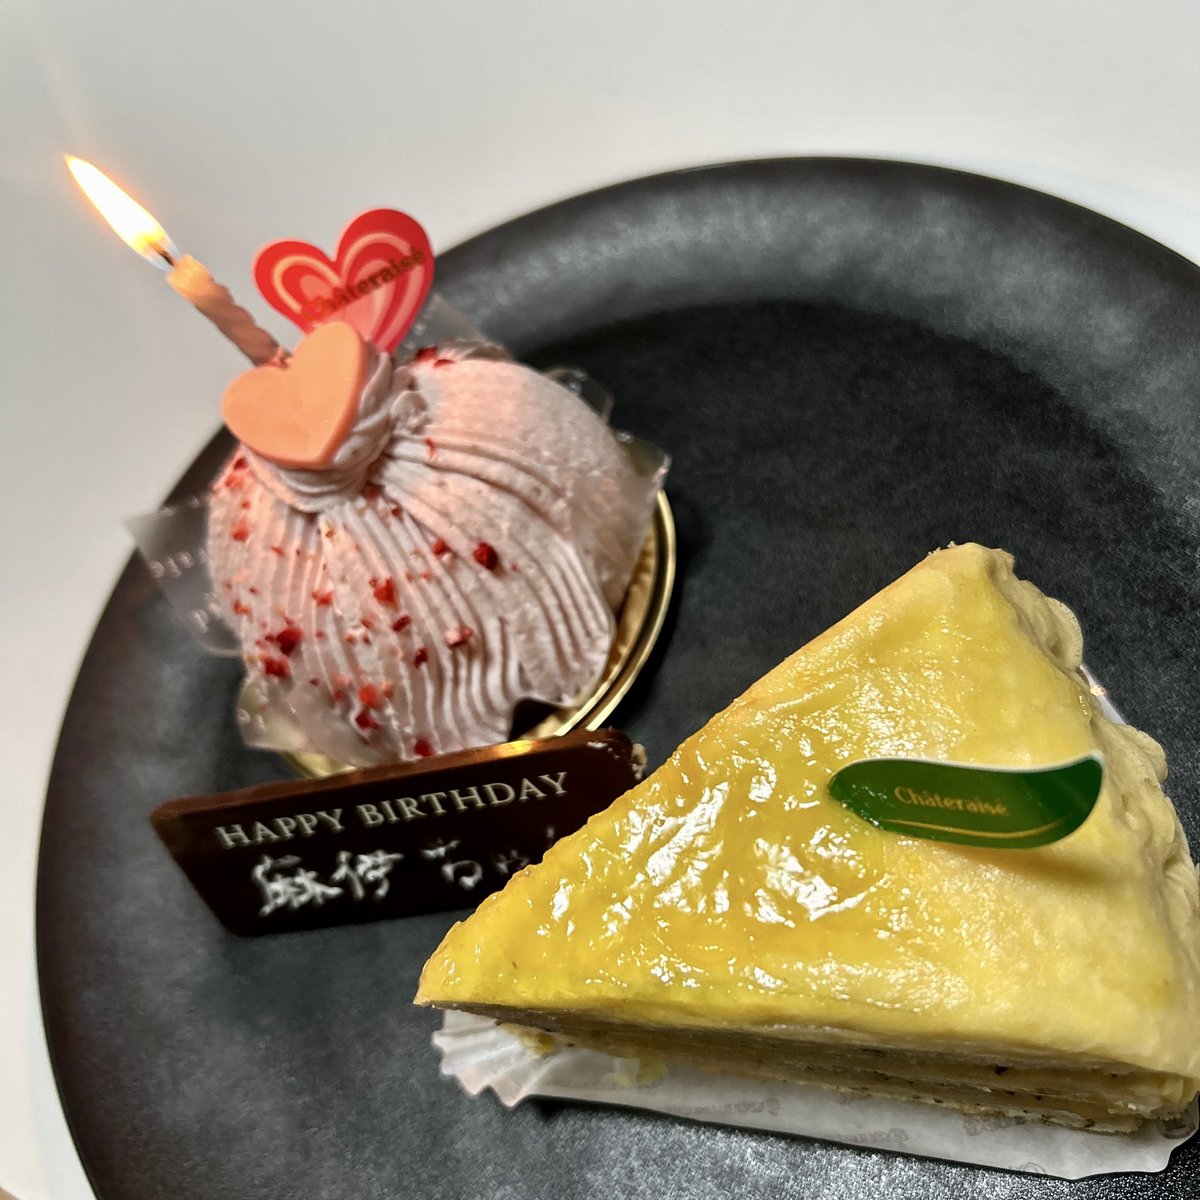 ・濃い苺のモンブラン
・瀬戸内レモンと紅茶のクレープケーキ

#誕生日 🎂
#HappyBirthday 
#5月27日 

#誕生日好きな人と繋がりたい 🎊